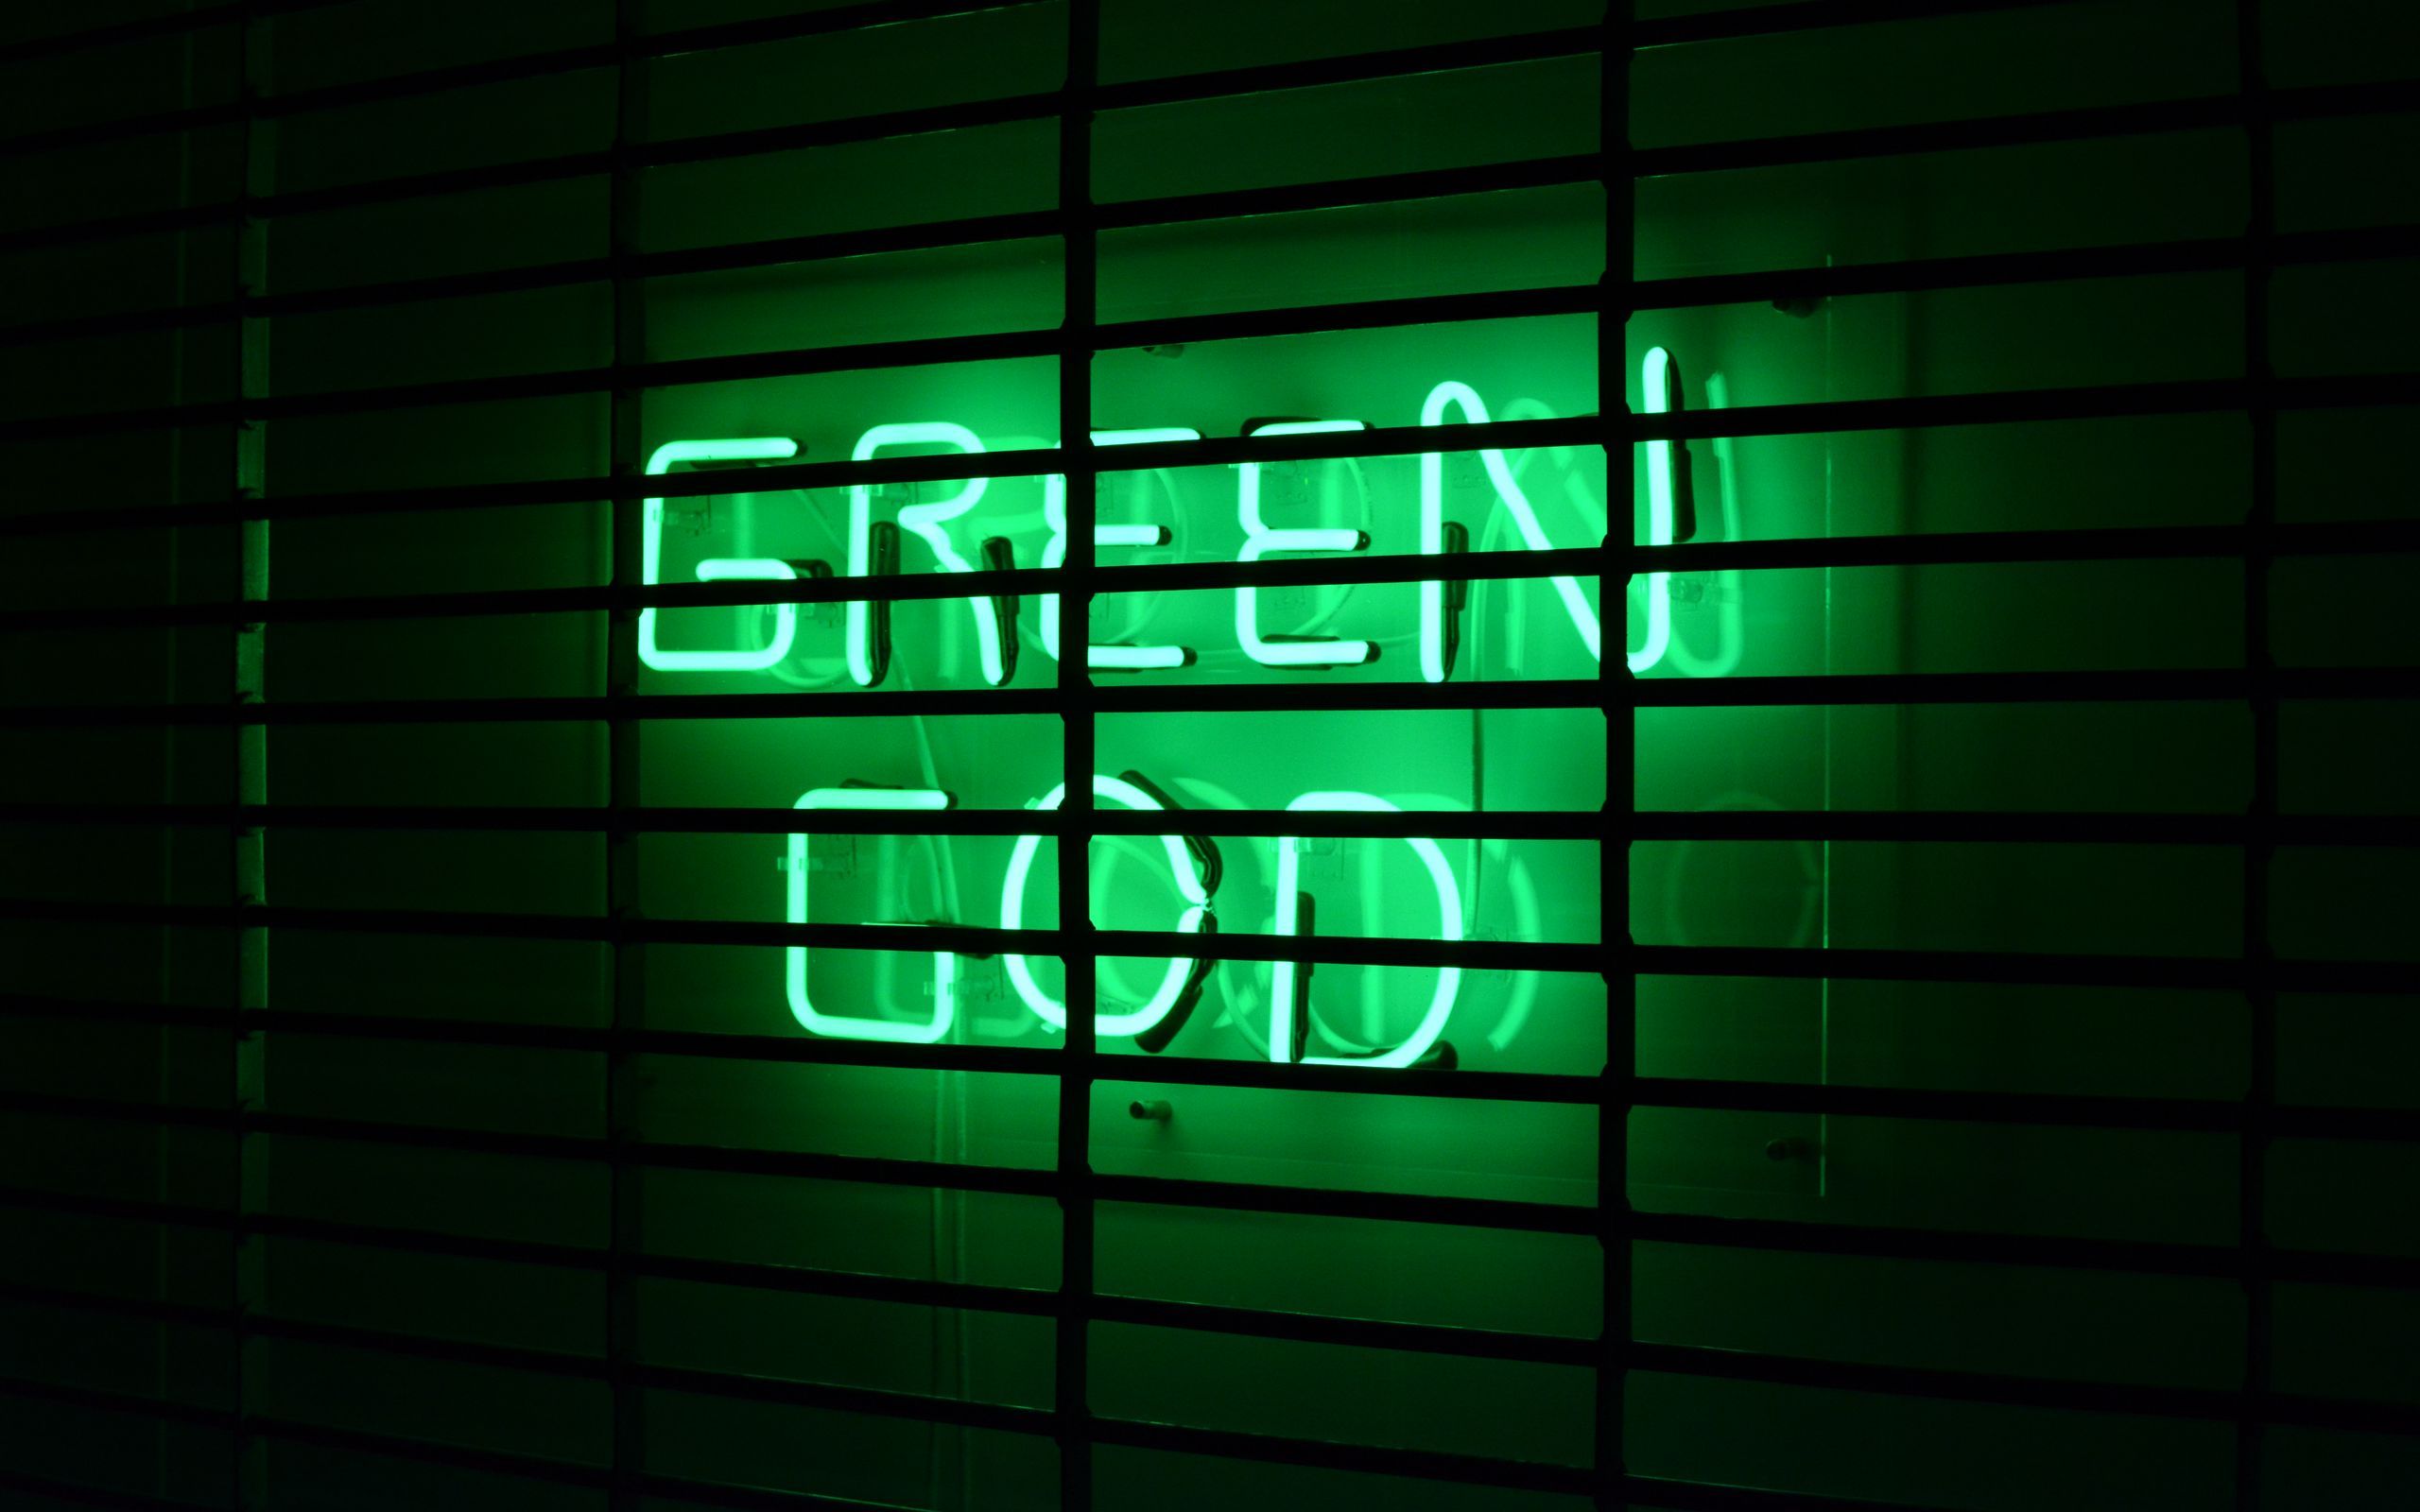 Bạn đang tìm kiếm những hình nền độc đáo và trẻ trung? Hãy đến với chúng tôi để khám phá những hình nền Neon Green chất lượng 4k, mang tới cho bạn trải nghiệm tuyệt vời trên màn hình của mình.